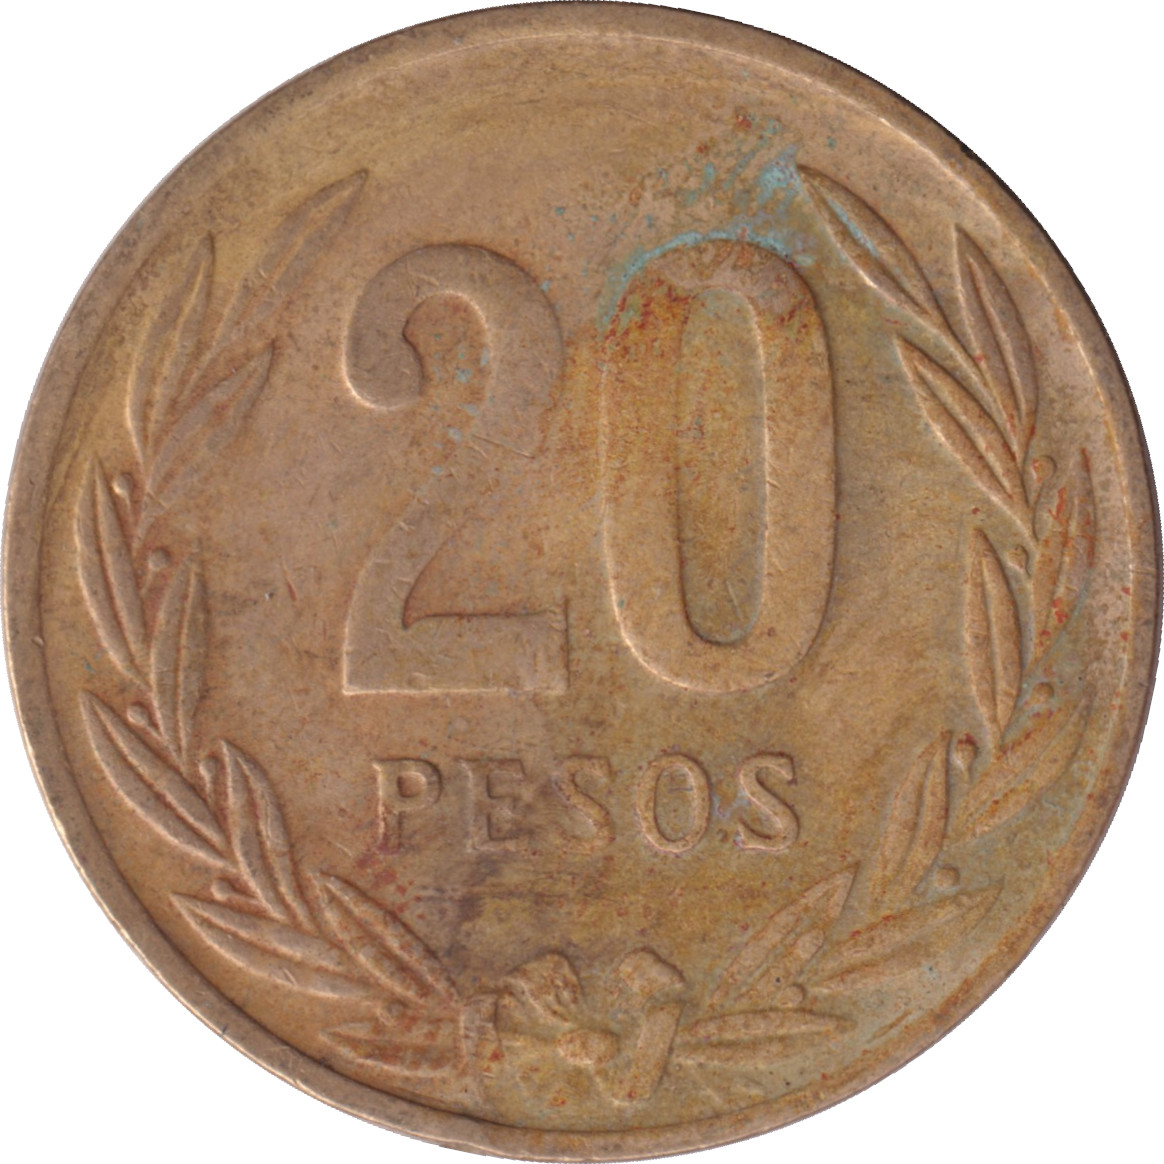 20 pesos - Vase